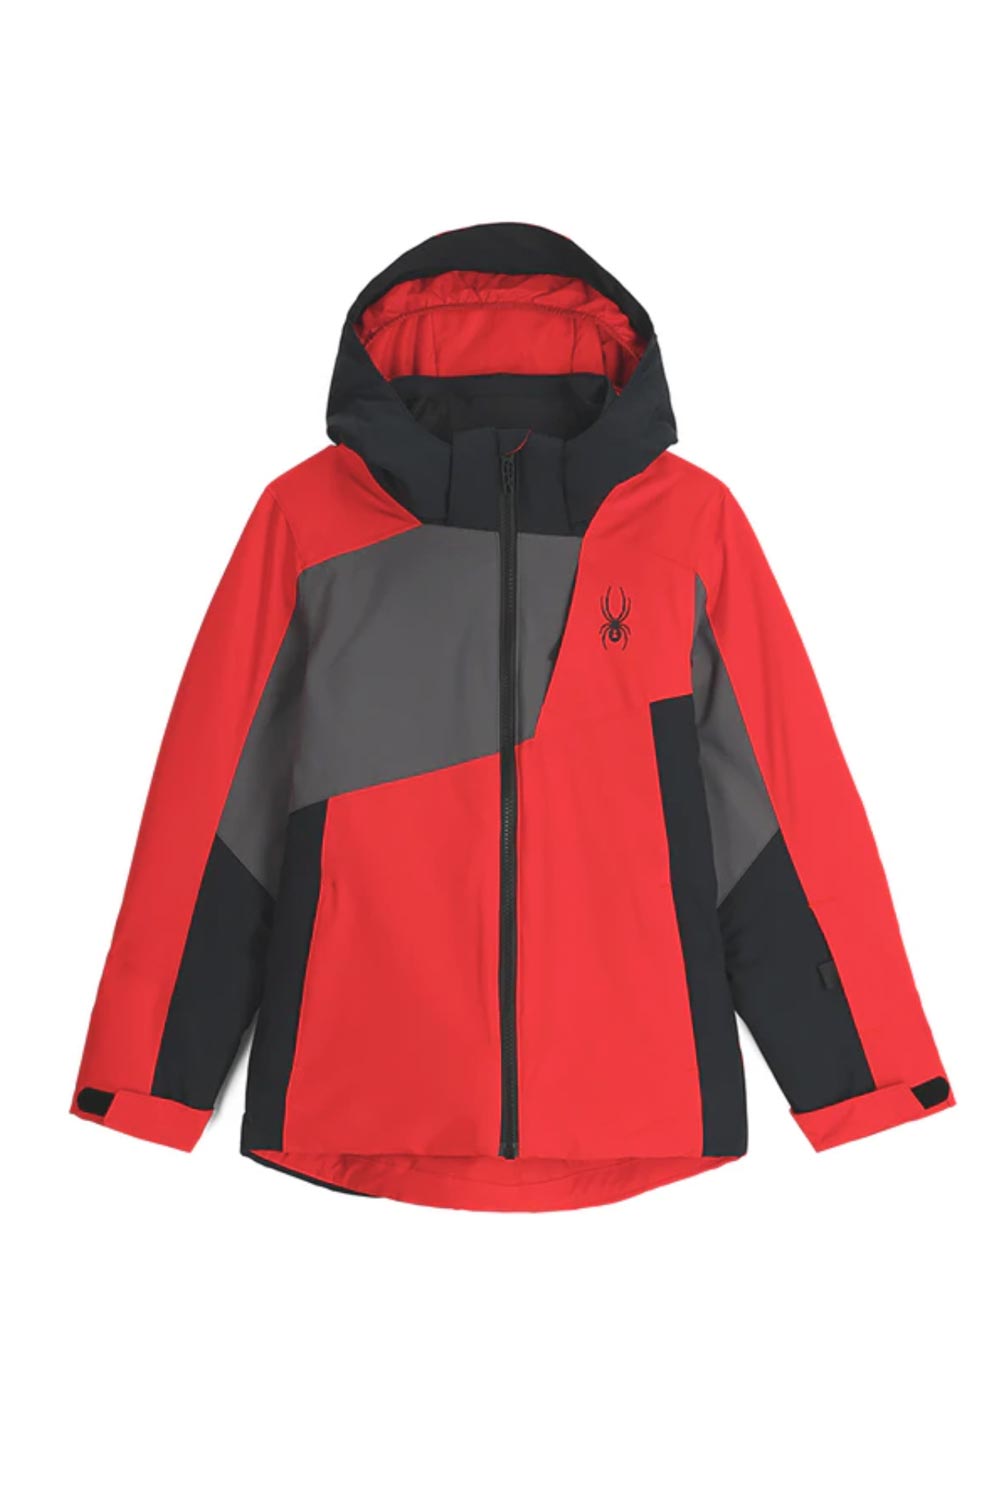 boys' Spyder Ambush ski jacket, red black and gray